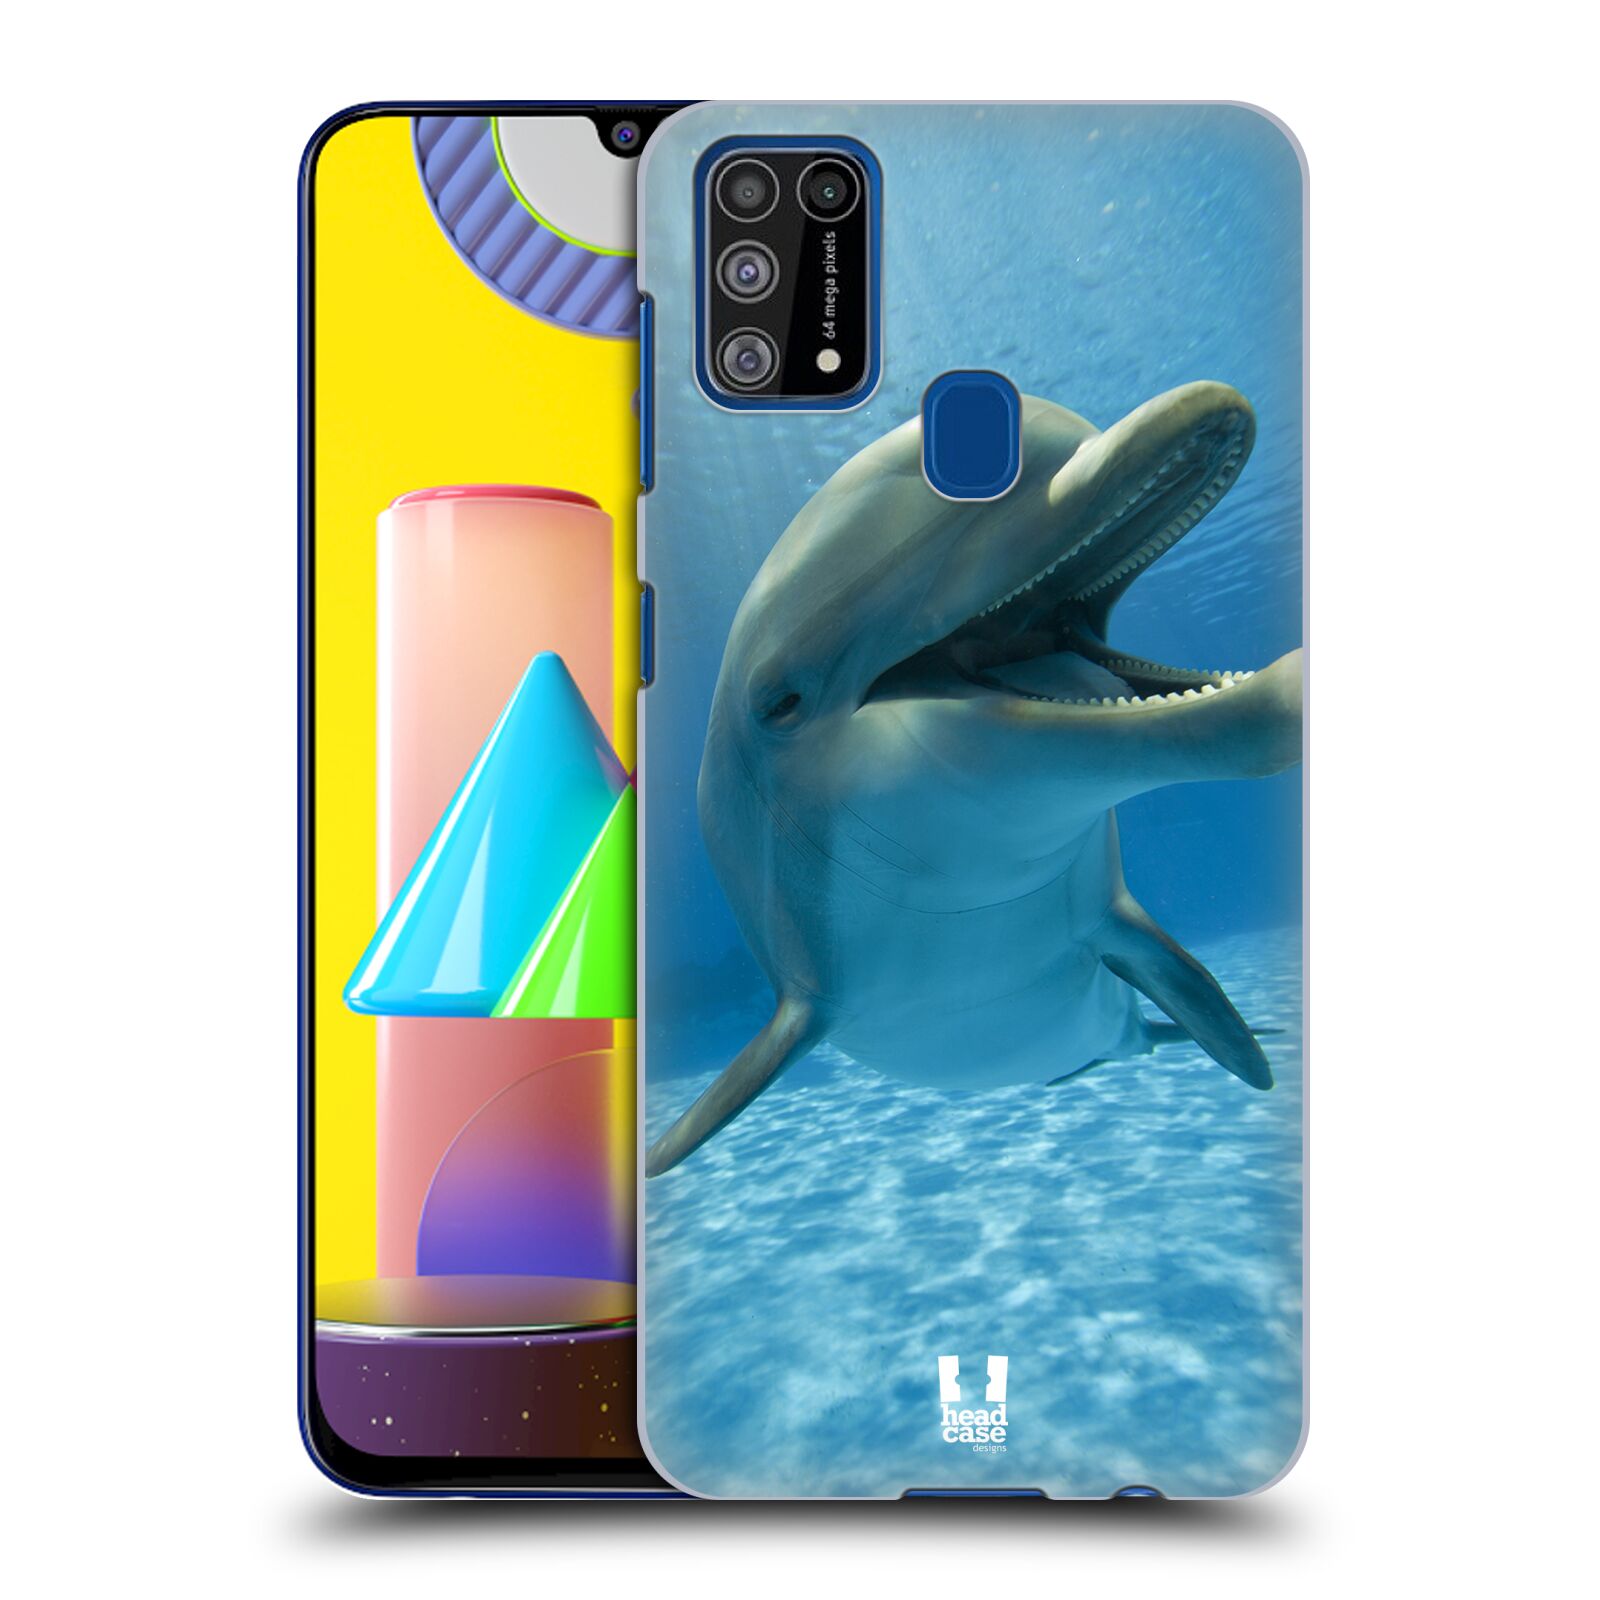 Zadní obal pro mobil Samsung Galaxy M31 - HEAD CASE - Svět zvířat delfín v moři